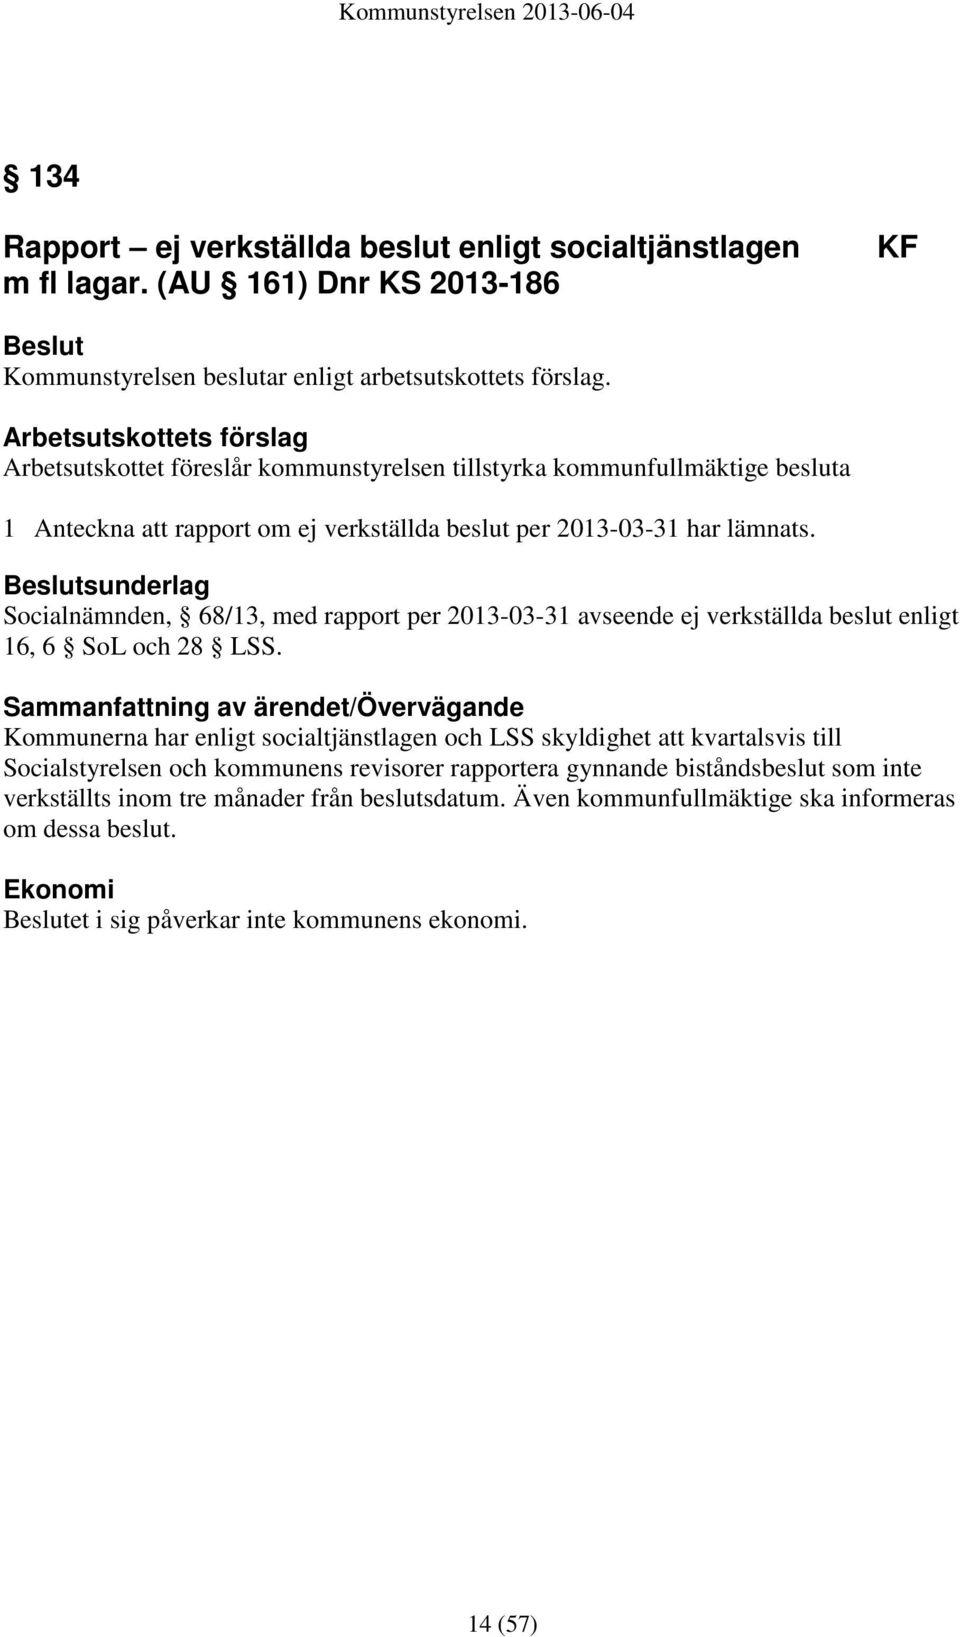 sunderlag Socialnämnden, 68/13, med rapport per 2013-03-31 avseende ej verkställda beslut enligt 16, 6 SoL och 28 LSS.